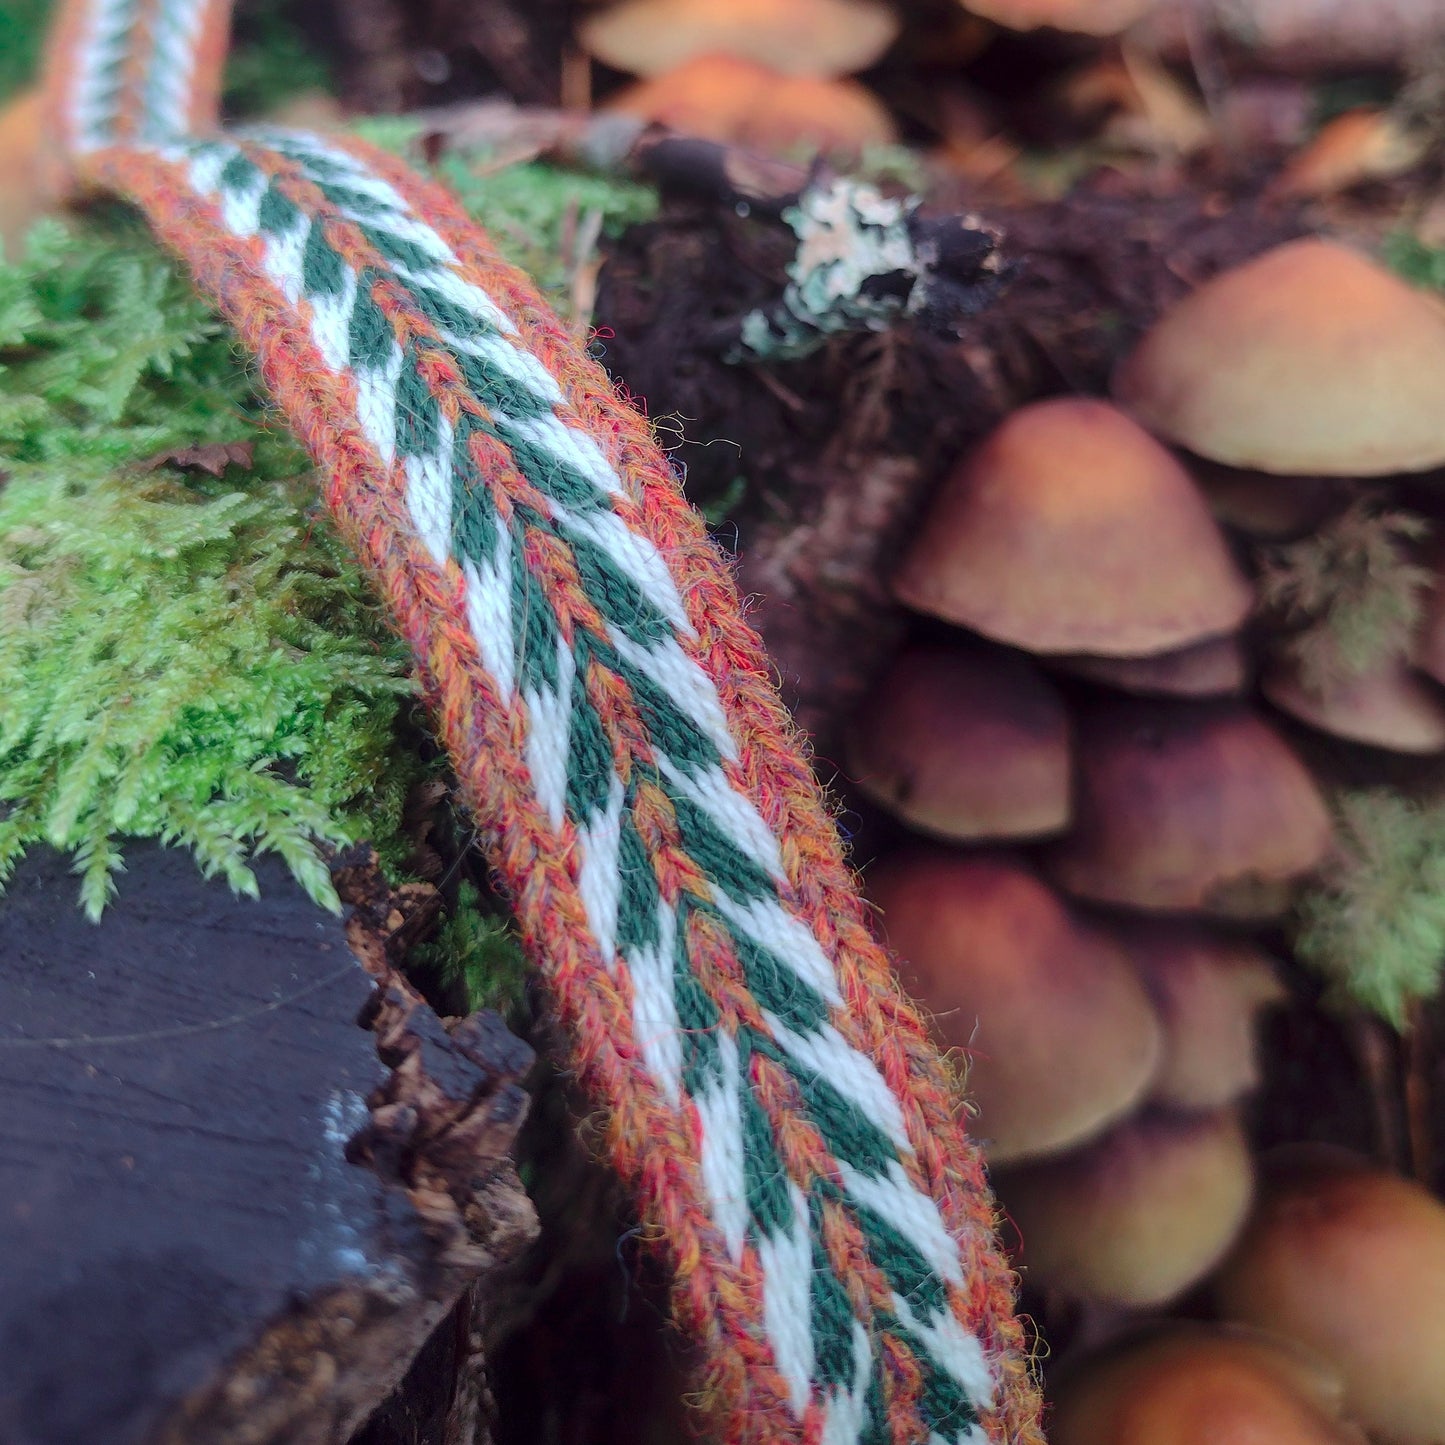 Fairy tale "fir" ribbon with arrow pattern